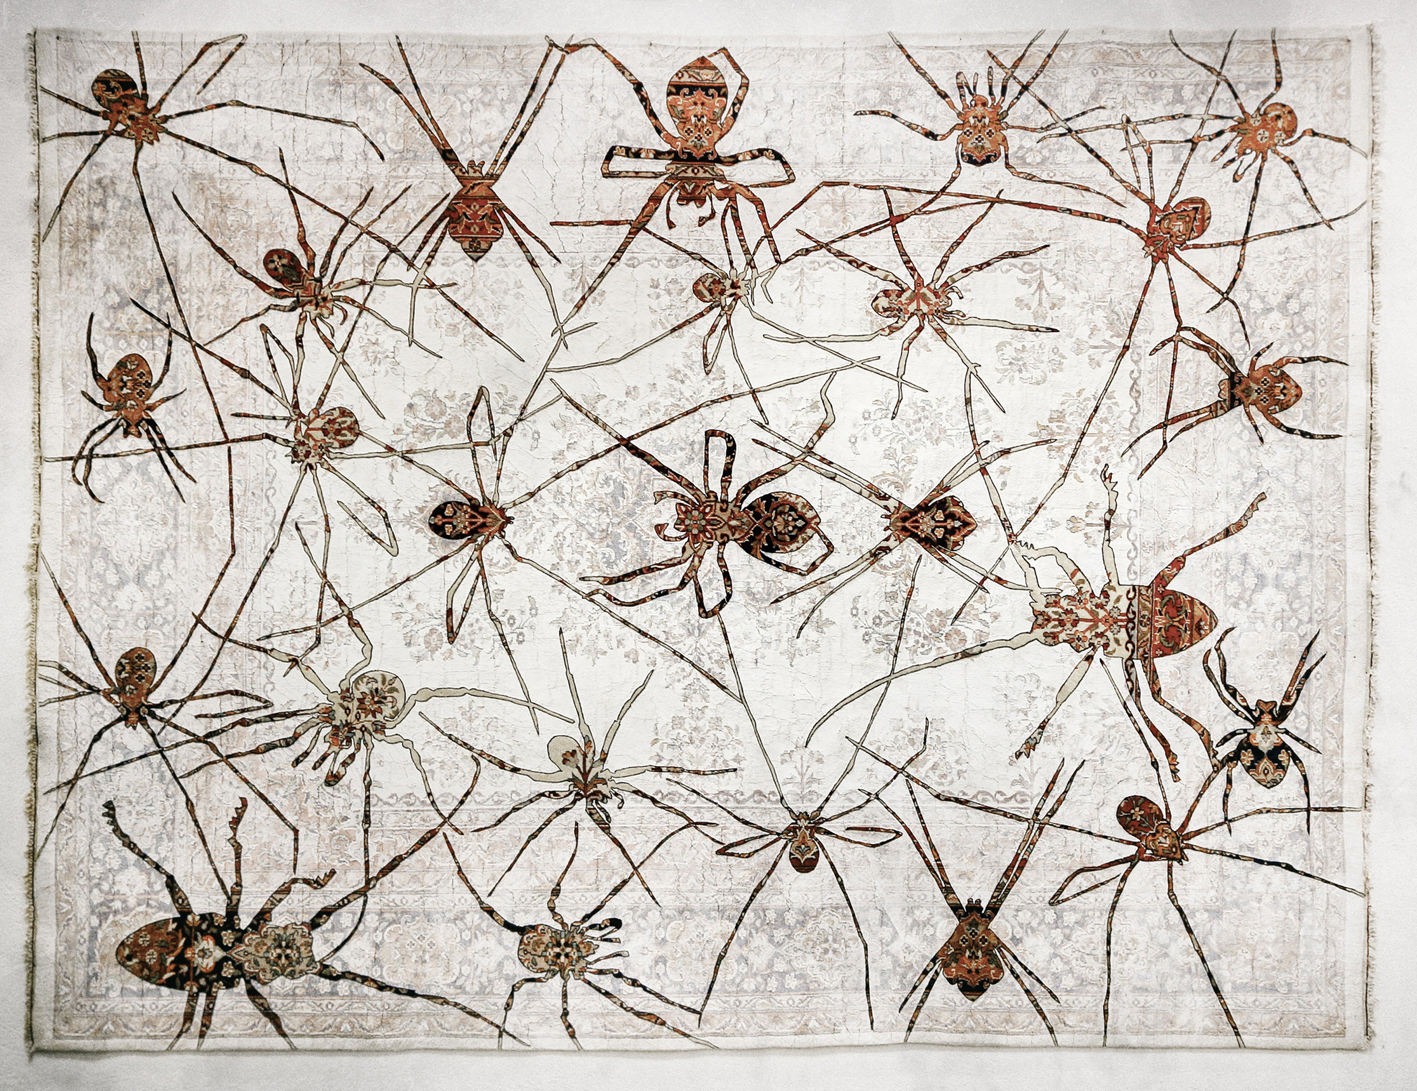 SPIDERS, by Noémi Kiss